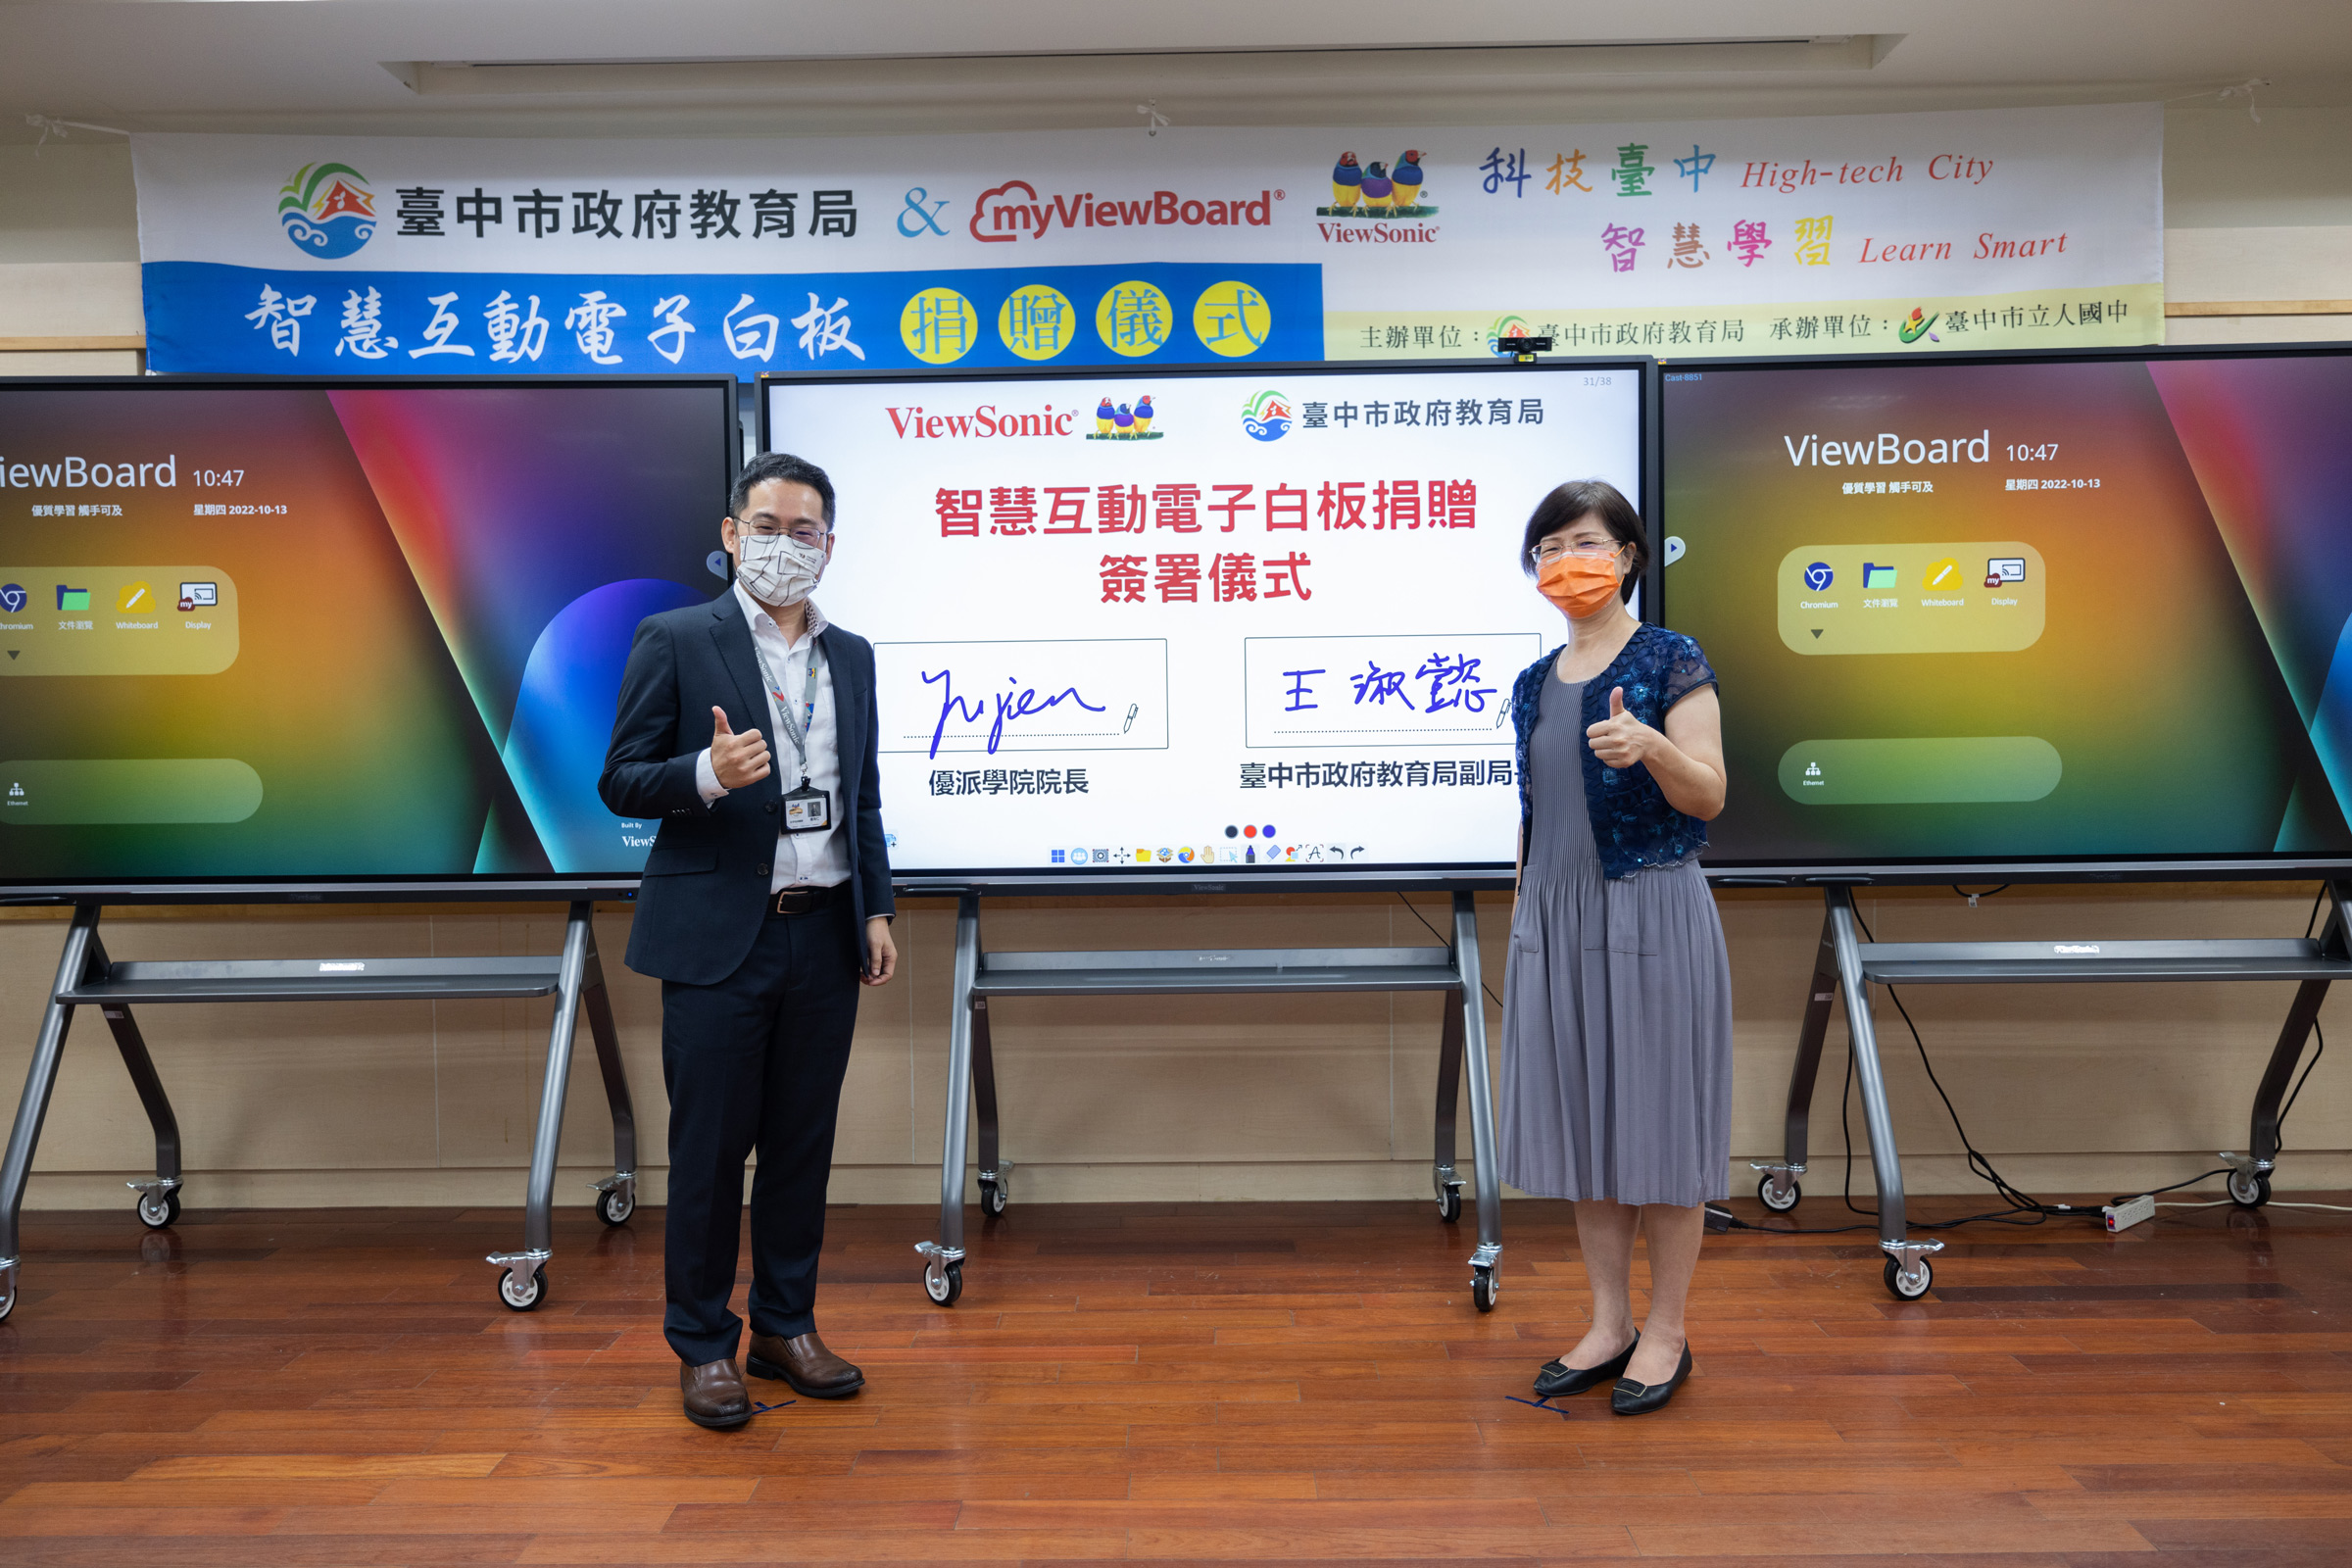 臺中市政府教育局與ViewSonic共同簽署合作備忘錄，鼓勵教師將數位科技融入教學，推動智慧學習的創新模式。